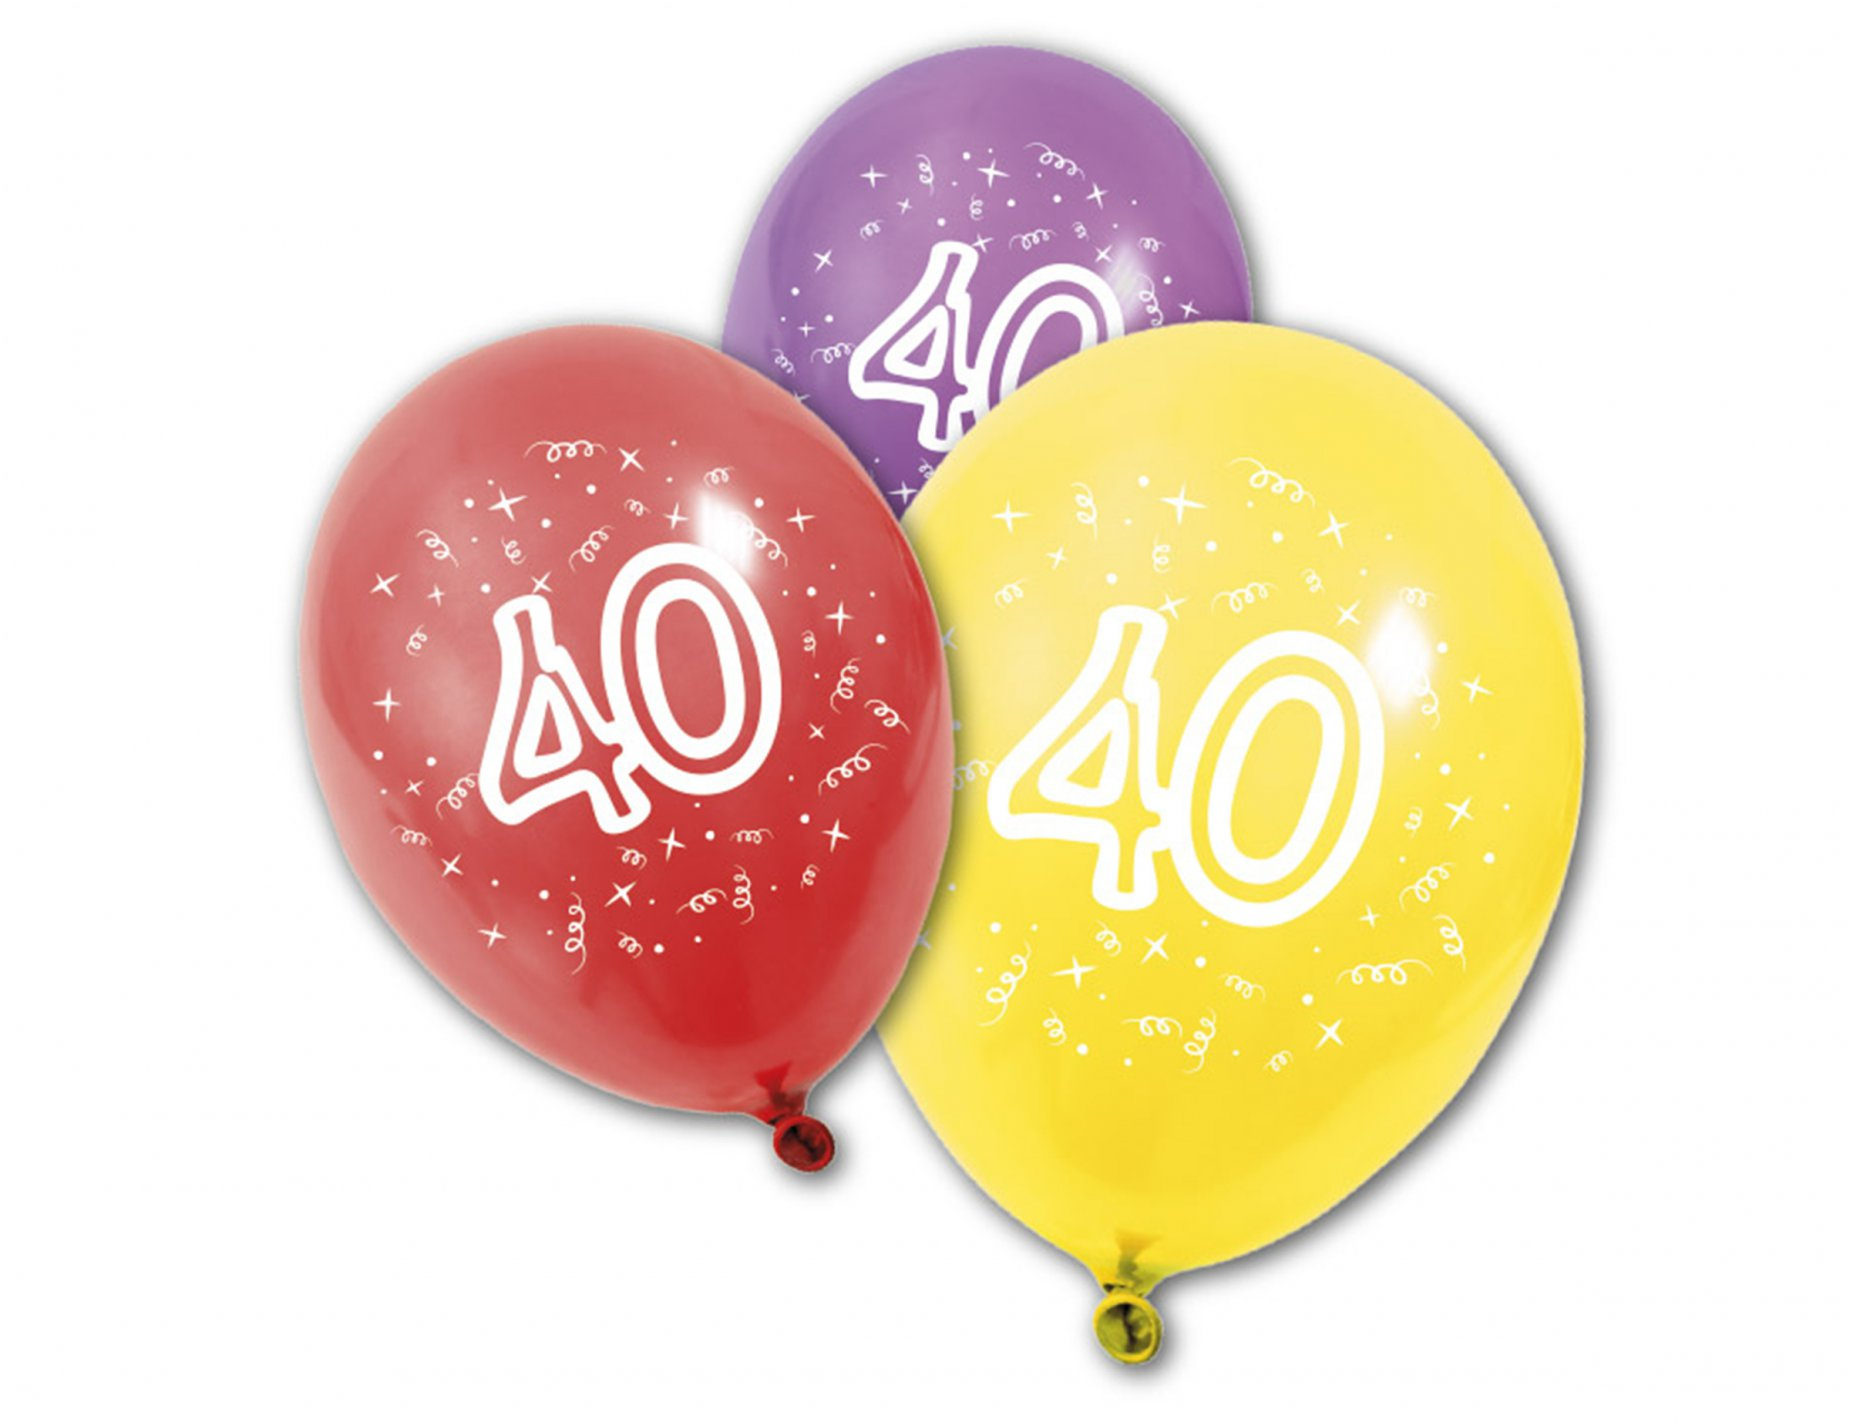 p 8 ballons imprime 40 ans coloris assortis 31 x 22 cm type=product